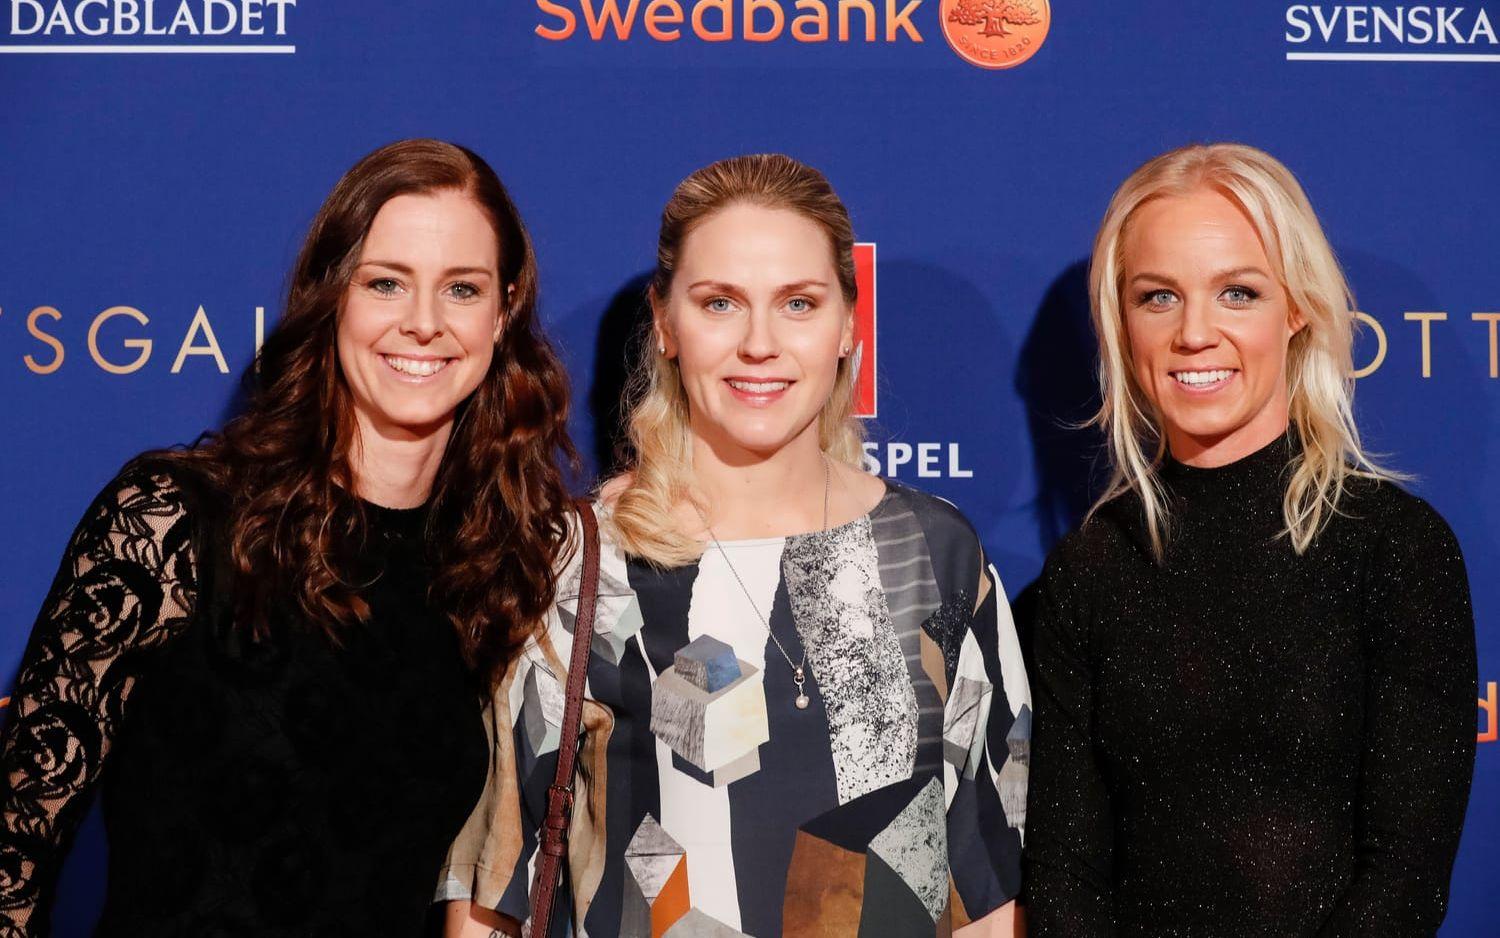 Lotta Schelin, Lisa Dahlkvist och Caroline Seger. Bild: Bildbyrån